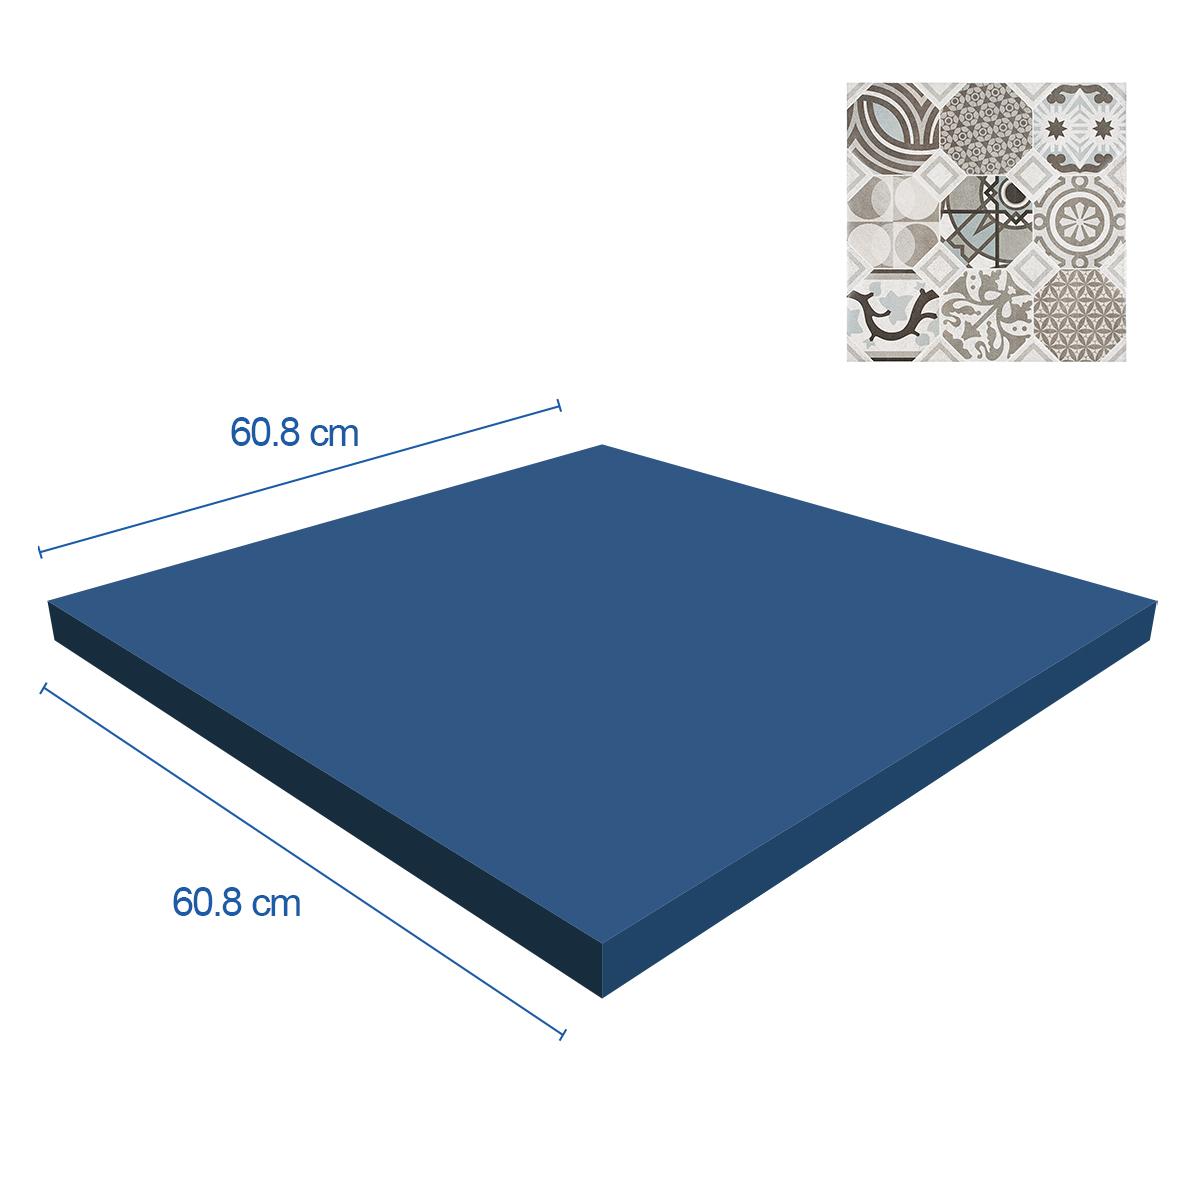 Porcelanato Flow Gris Mate - 60.8X60.8 cm - 1.48 m2